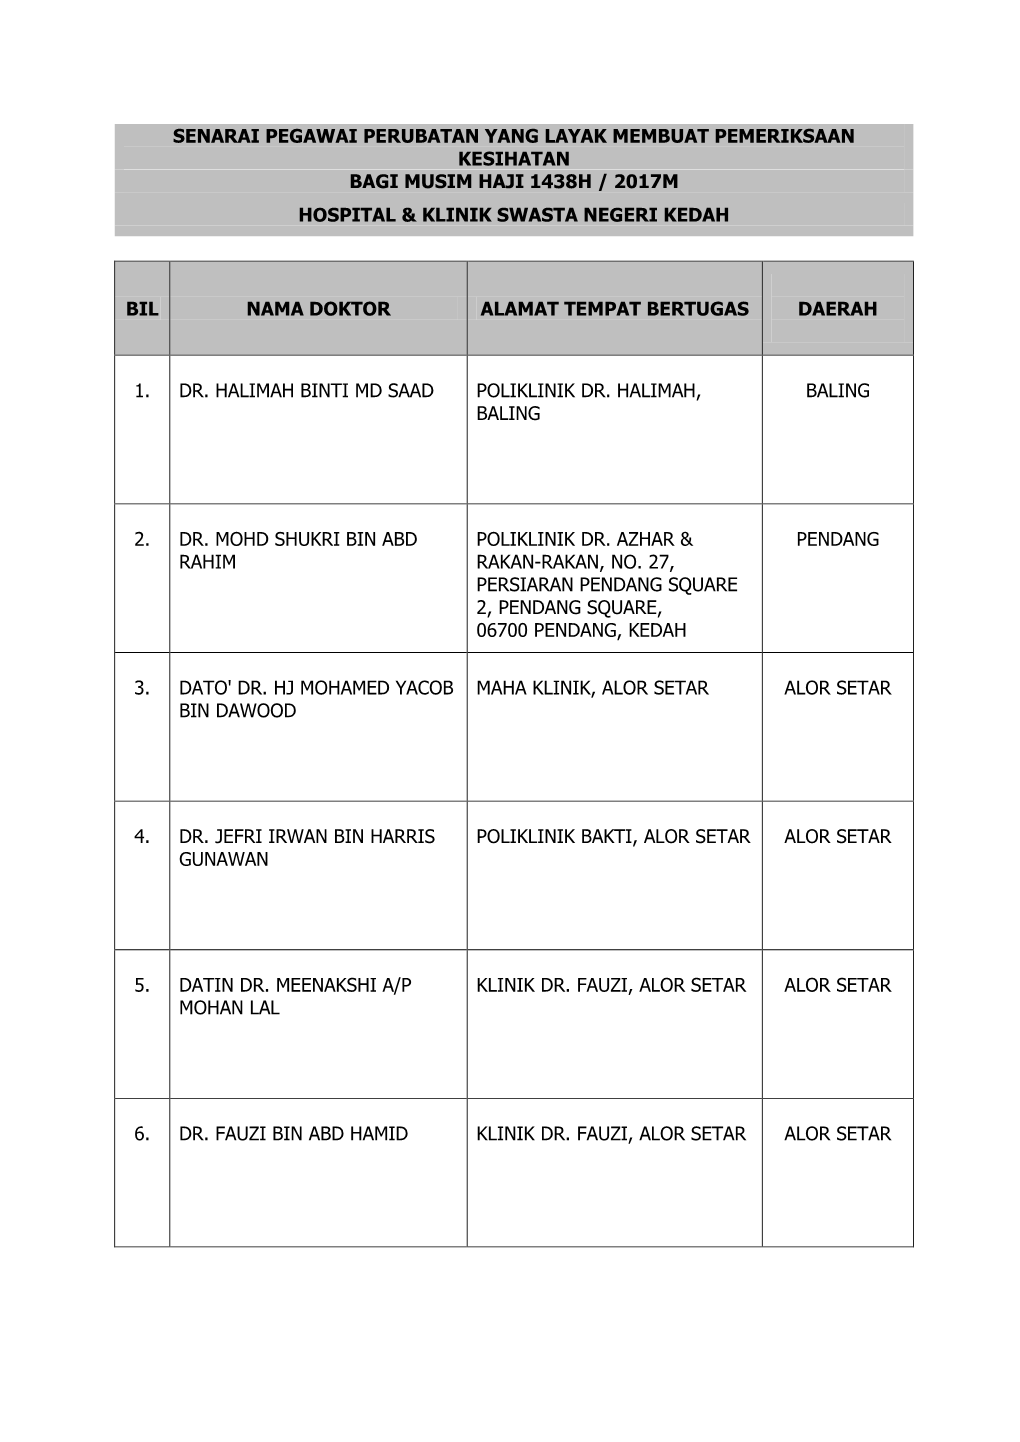 Senarai Pegawai Perubatan Yang Layak Membuat Pemeriksaan Kesihatan Bagi Musim Haji 1438H / 2017M Hospital & Klinik Swasta Ne